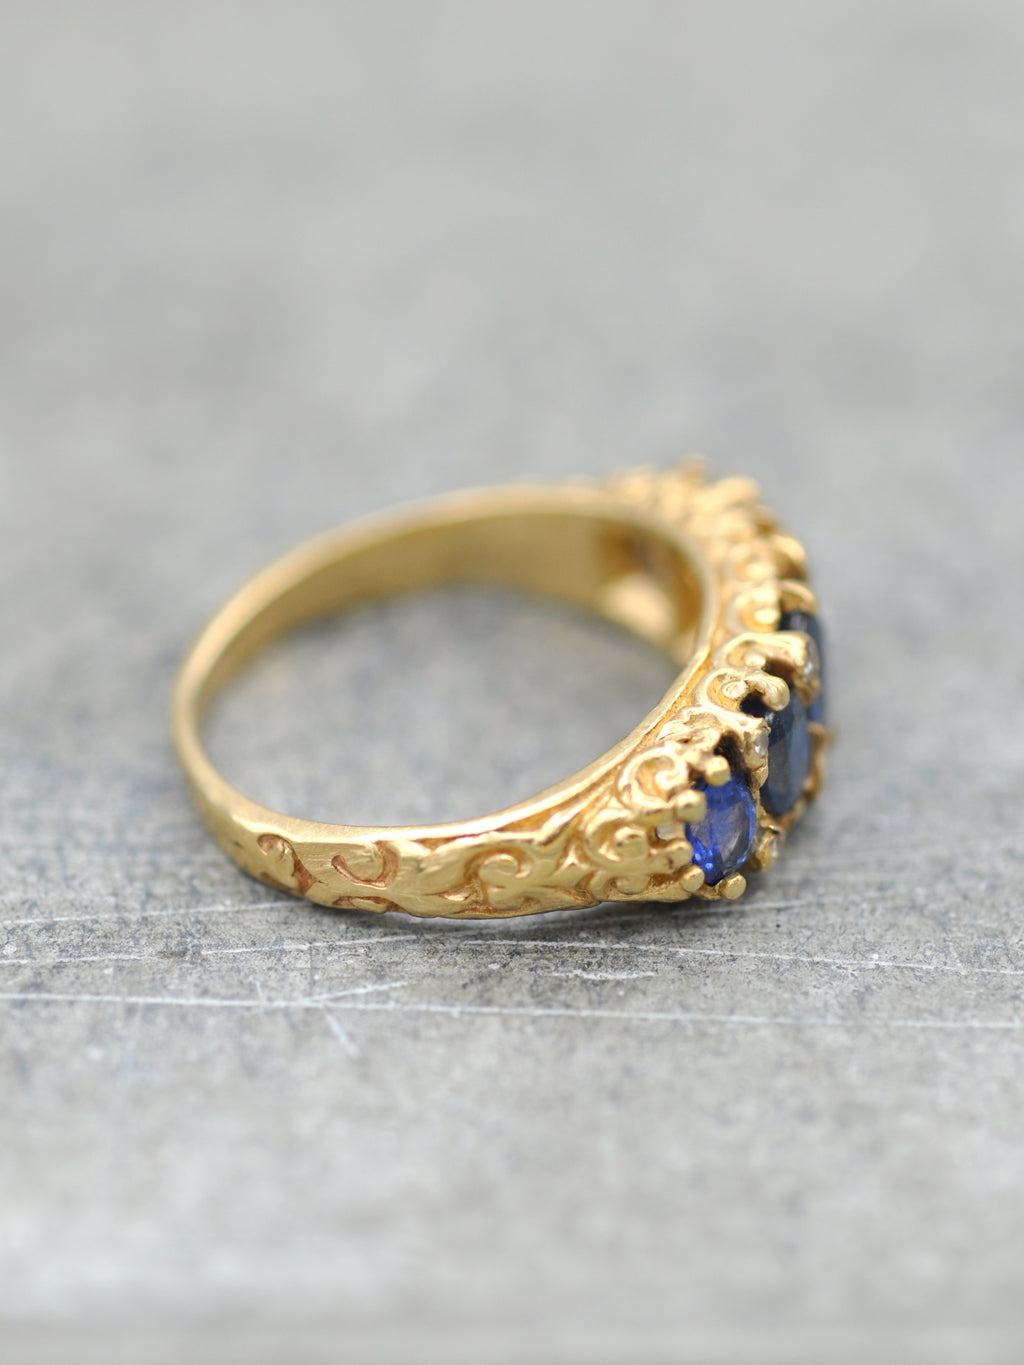 Antique 14K Sapphire & Diamond Ring - LUNESSA